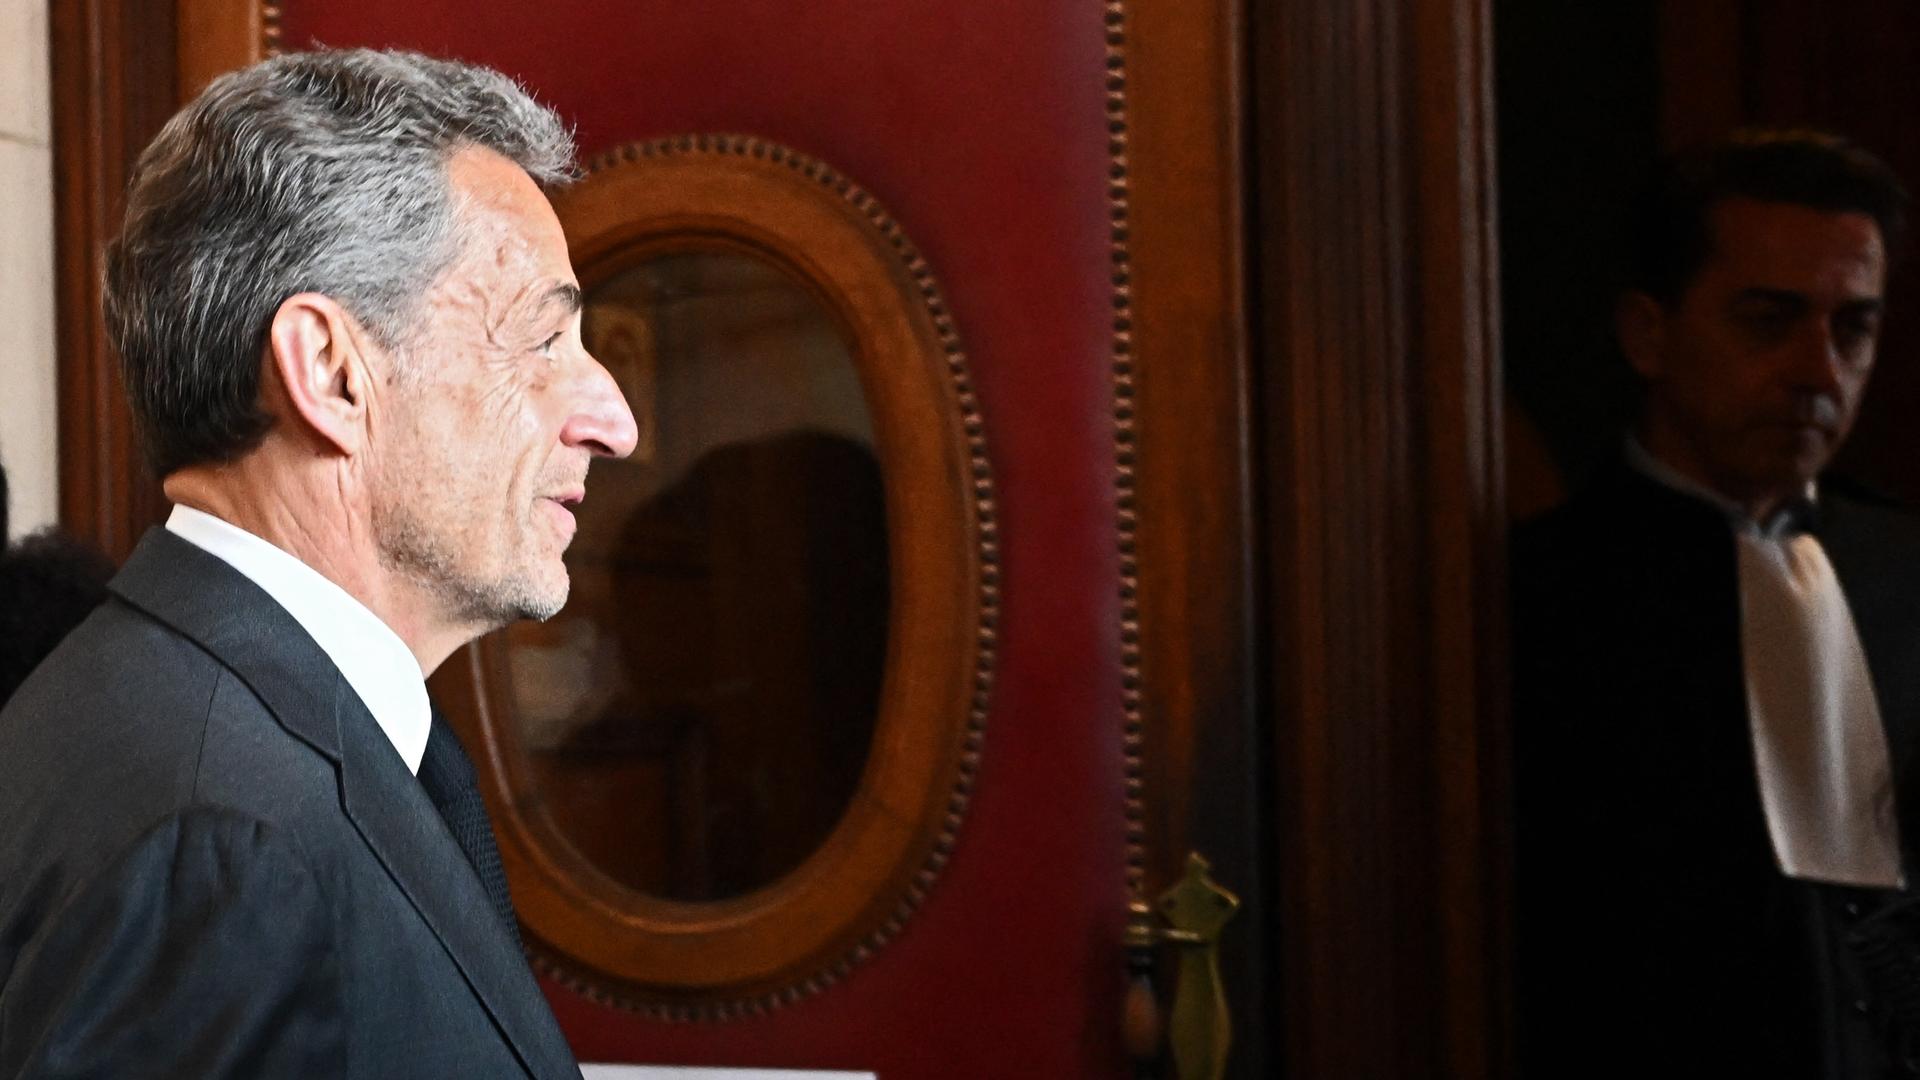 Der frühere französische Präsident Sarkozy im Seitenprofil in einem Gerichtssaal.